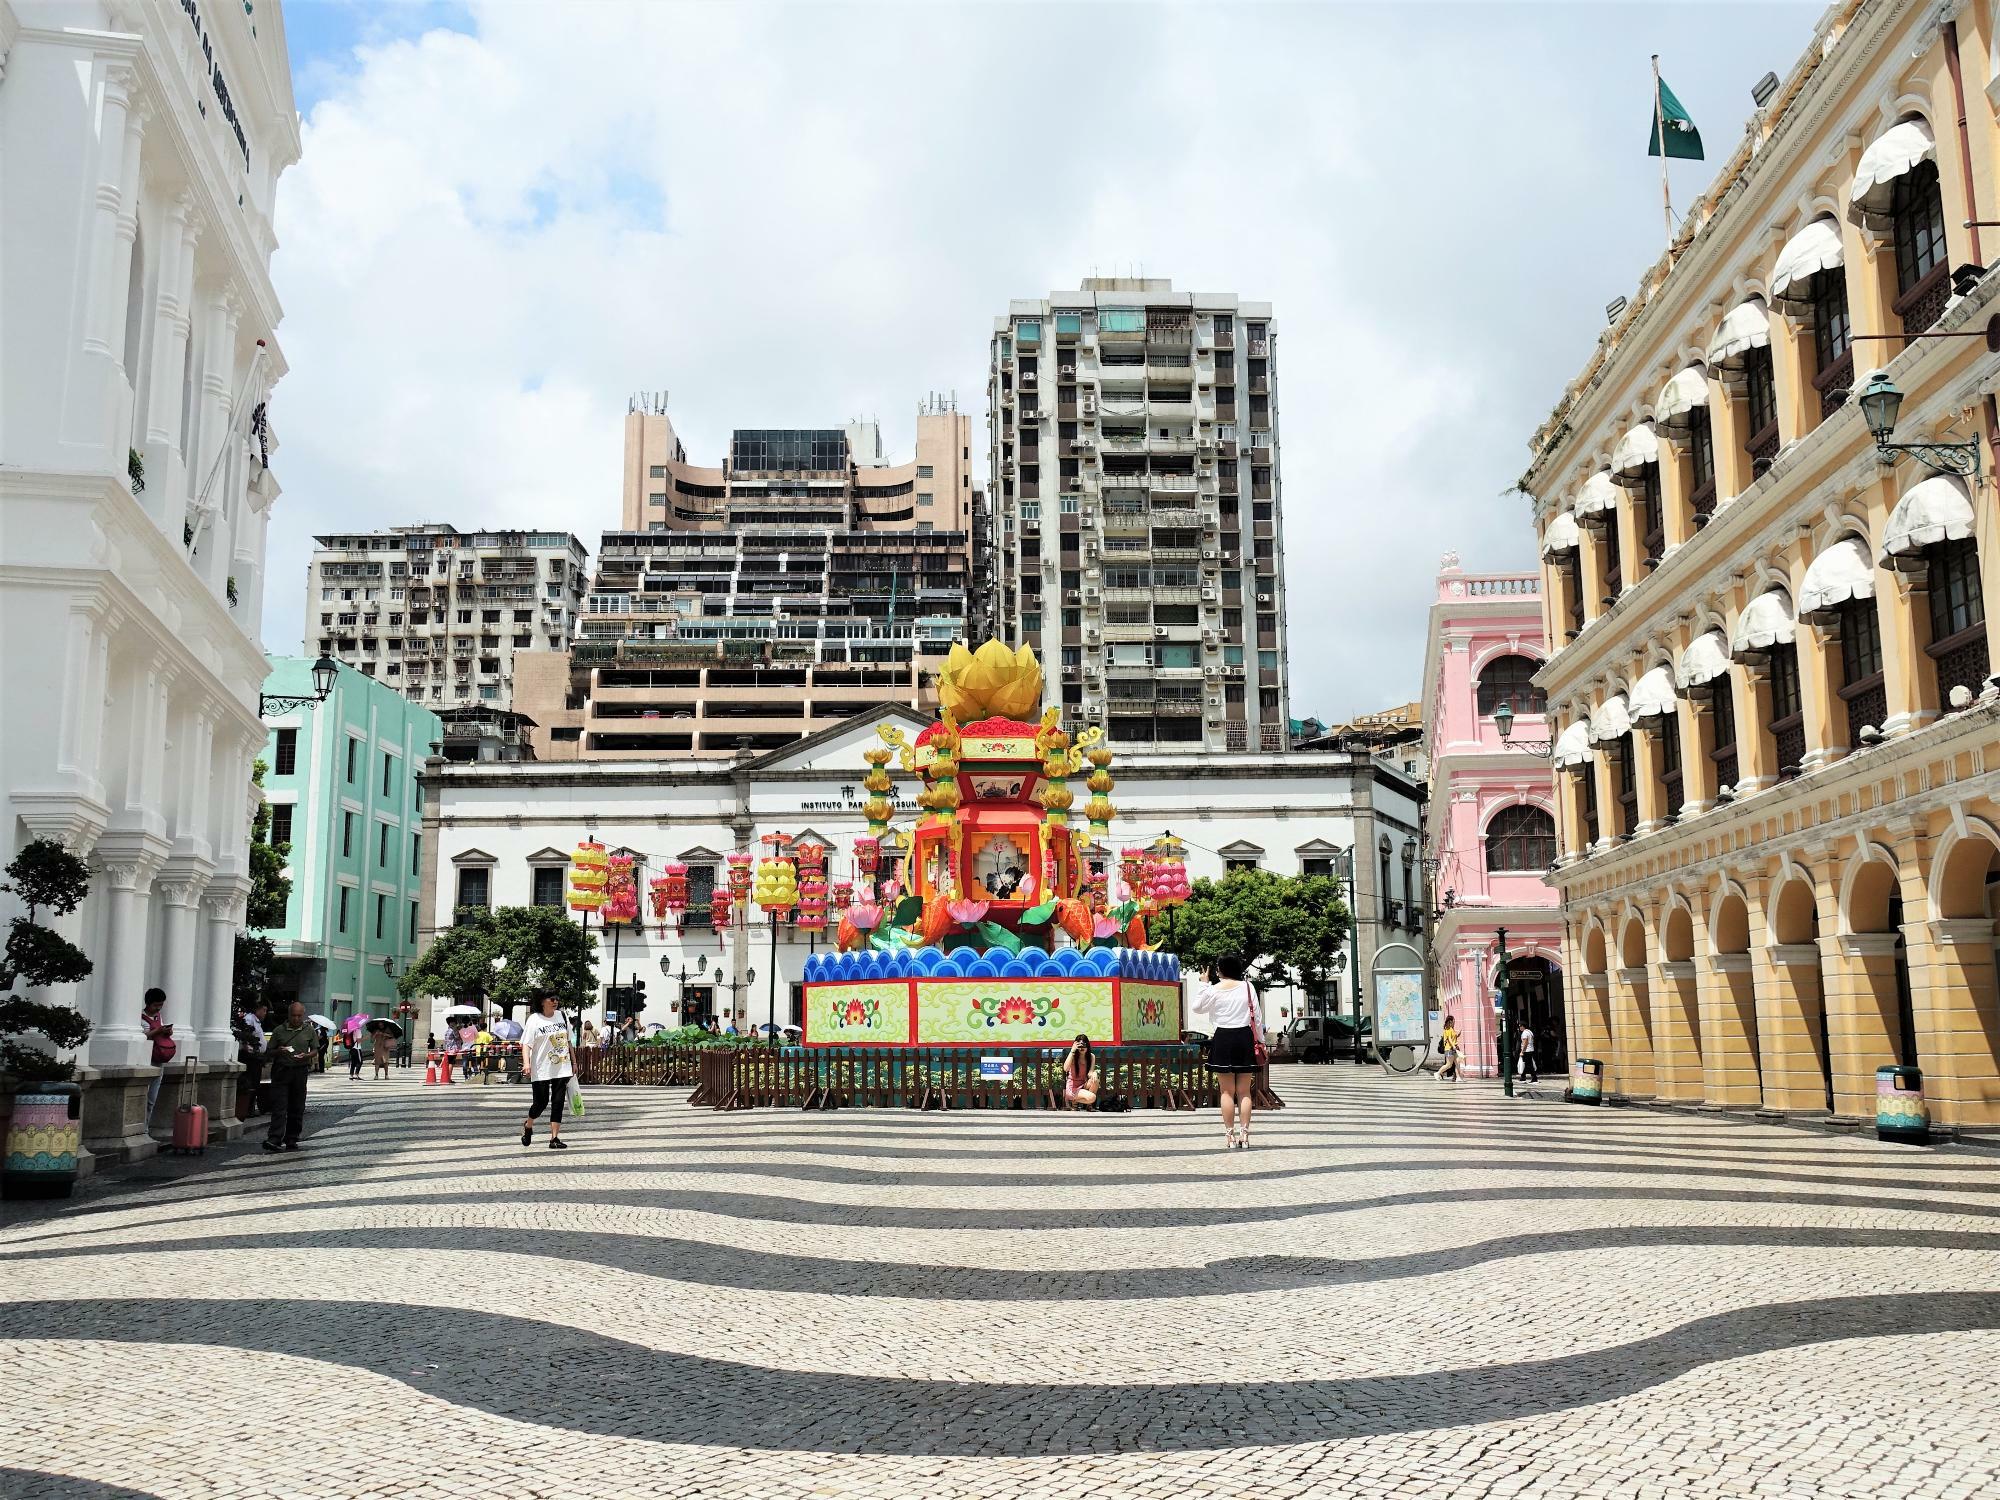 ポルトガル統治時代の面影を残すセナド広場。奥にはアジアな住居建物。